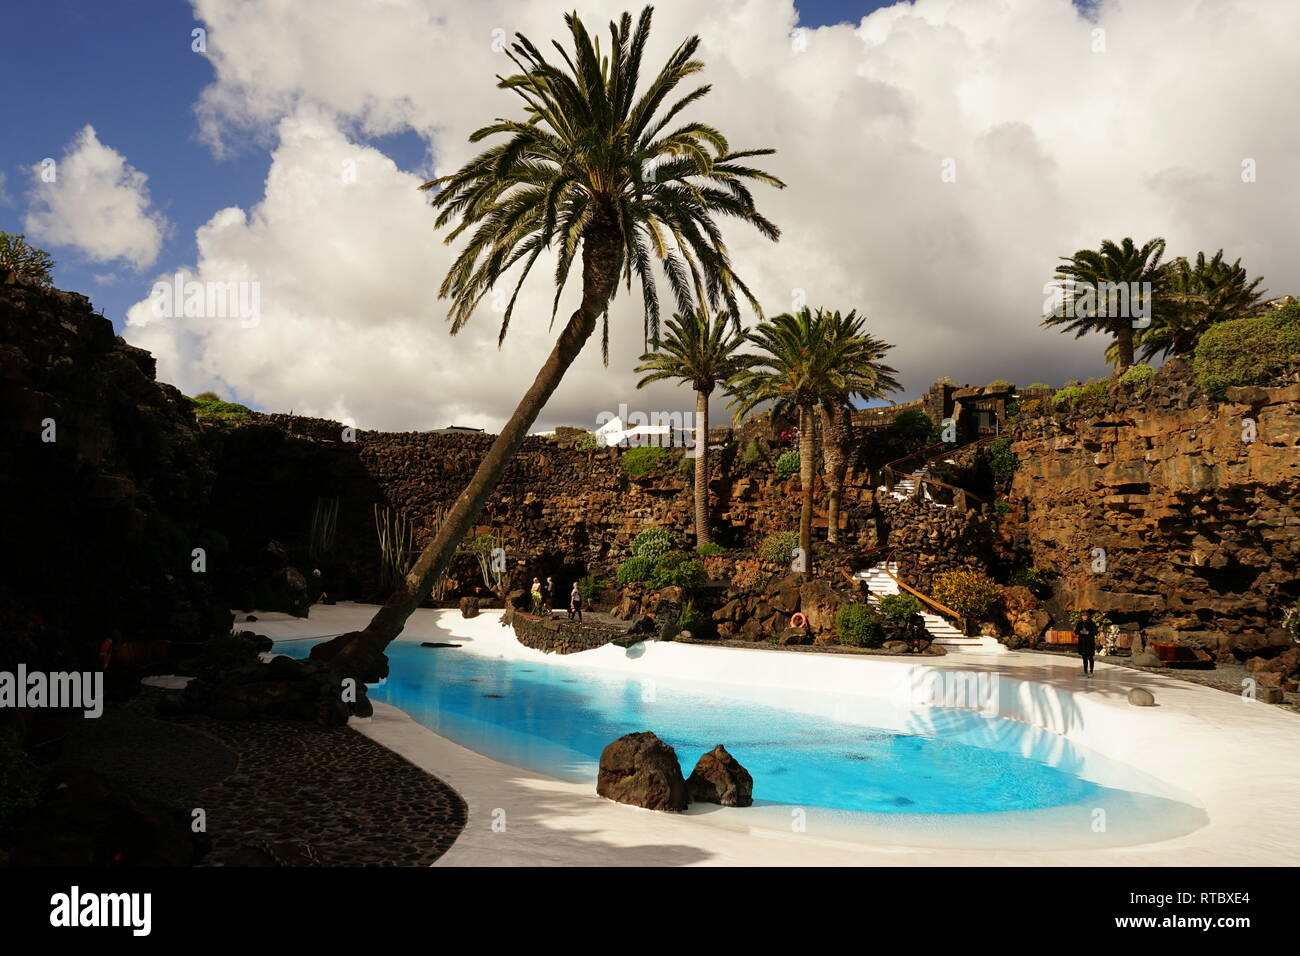 Jameos del Agua, im Lavafeld des Monte Corona, geschaffen von César Manrique, Lanzarote, Kanarische Inseln, Spanien Stock Photo